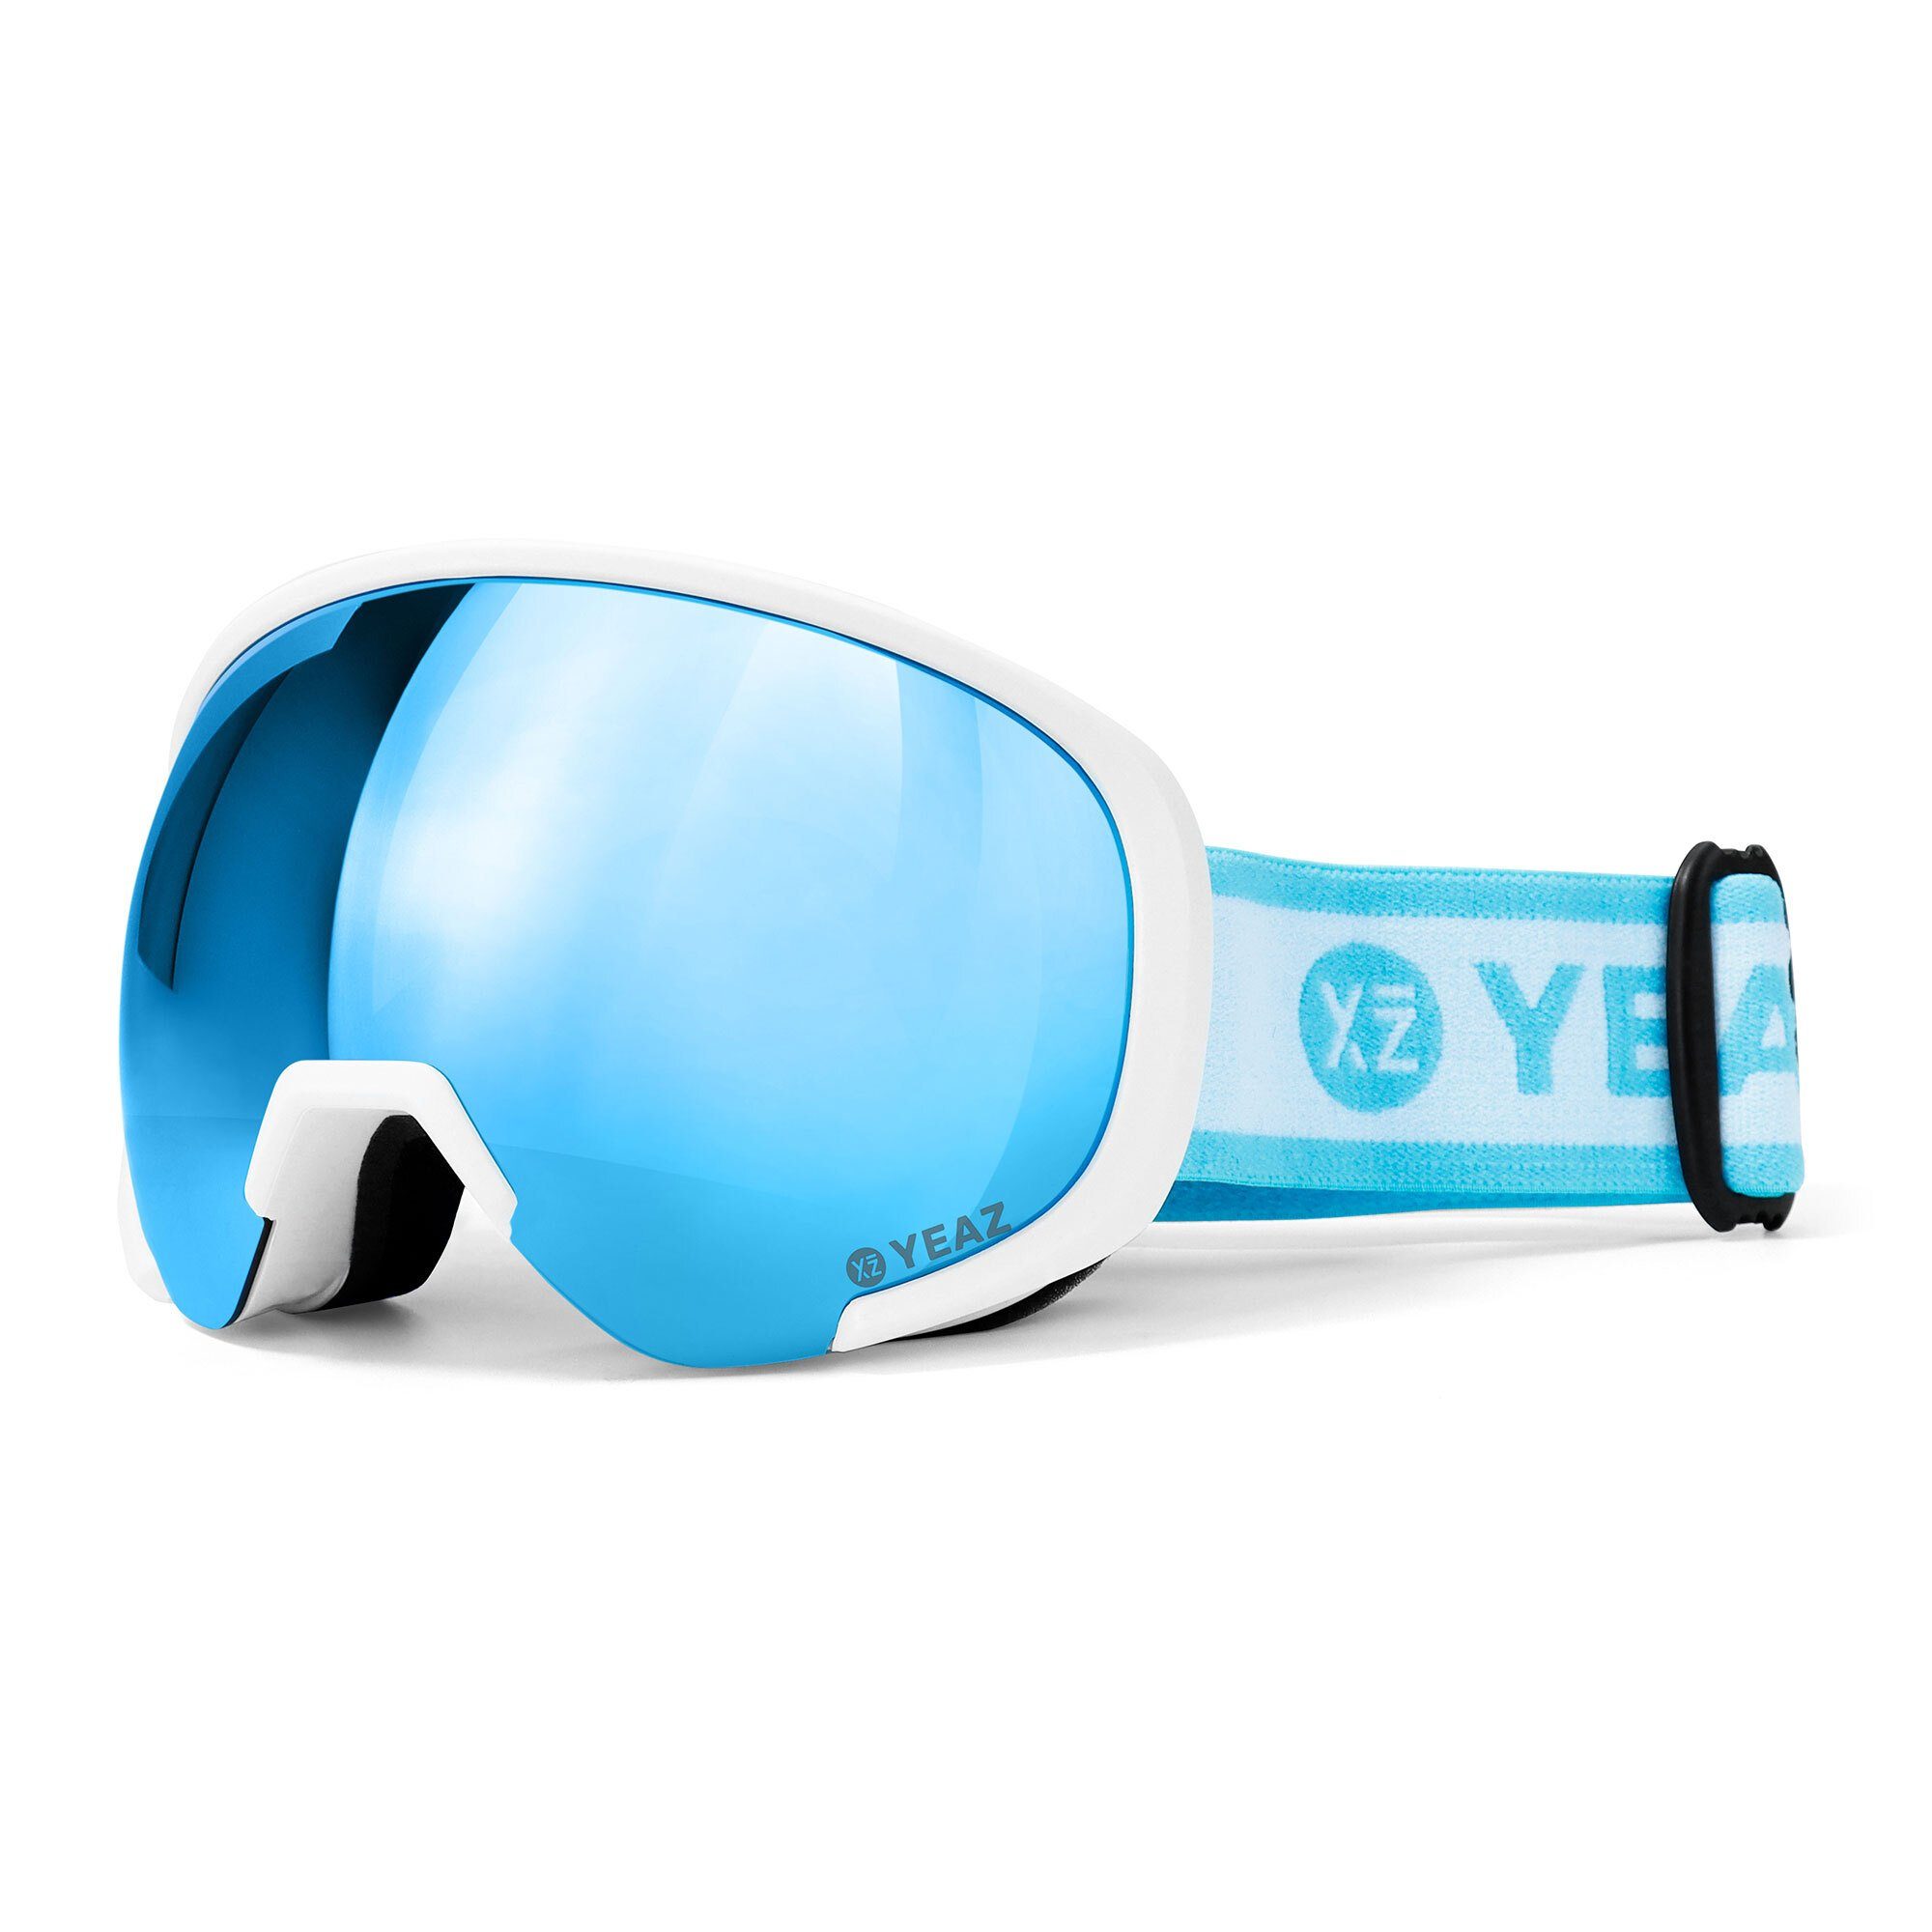 POWDER für Jugendliche, BLACK YEAZ und Skibrille Premium-Ski- und RUN, YEAZ Erwachsene Inklusive Aufbewahrungstasche Snowboardbrille